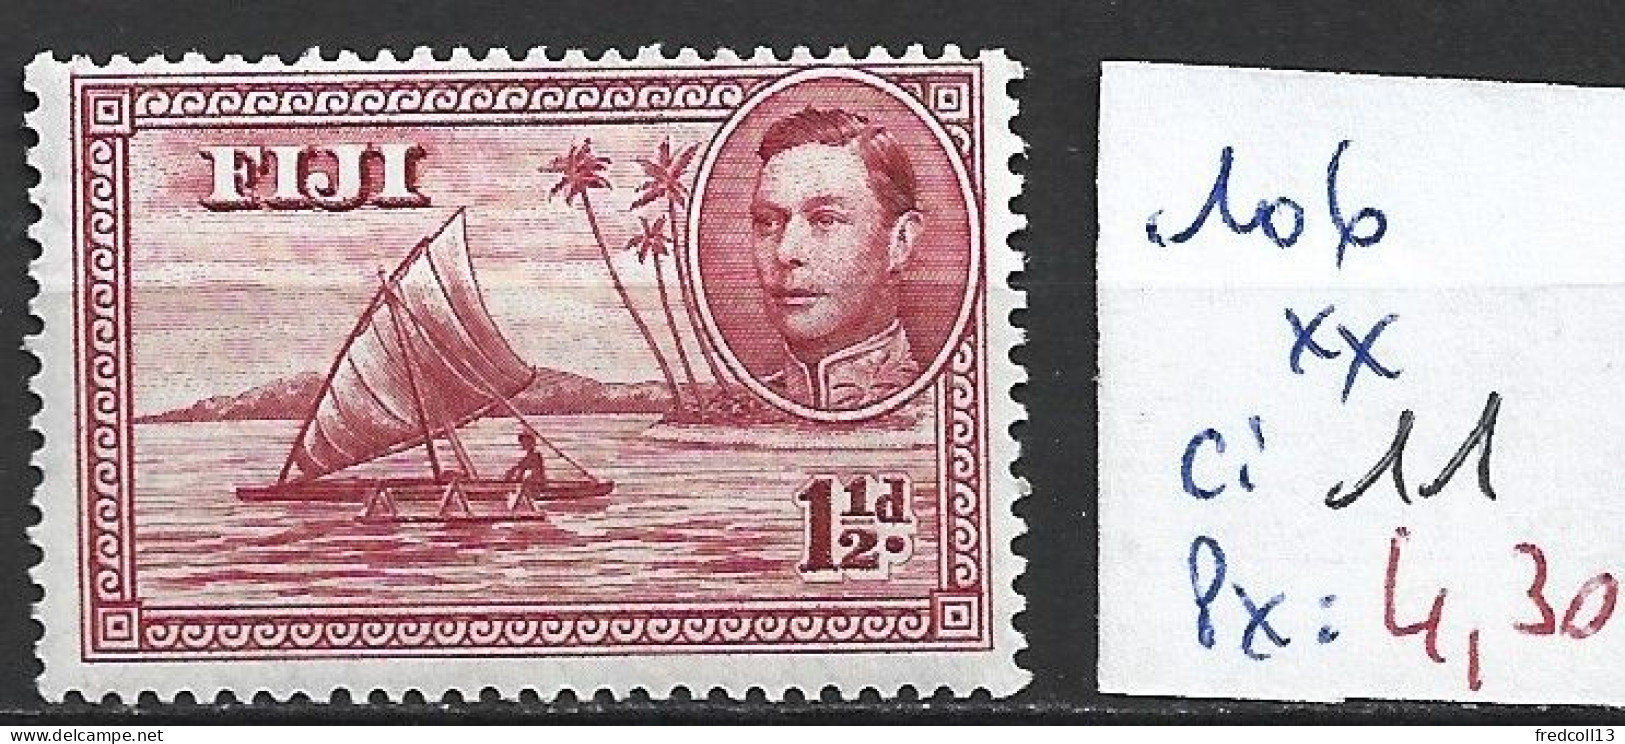 FIDJI 106 ** Côte 11 € - Fiji (...-1970)